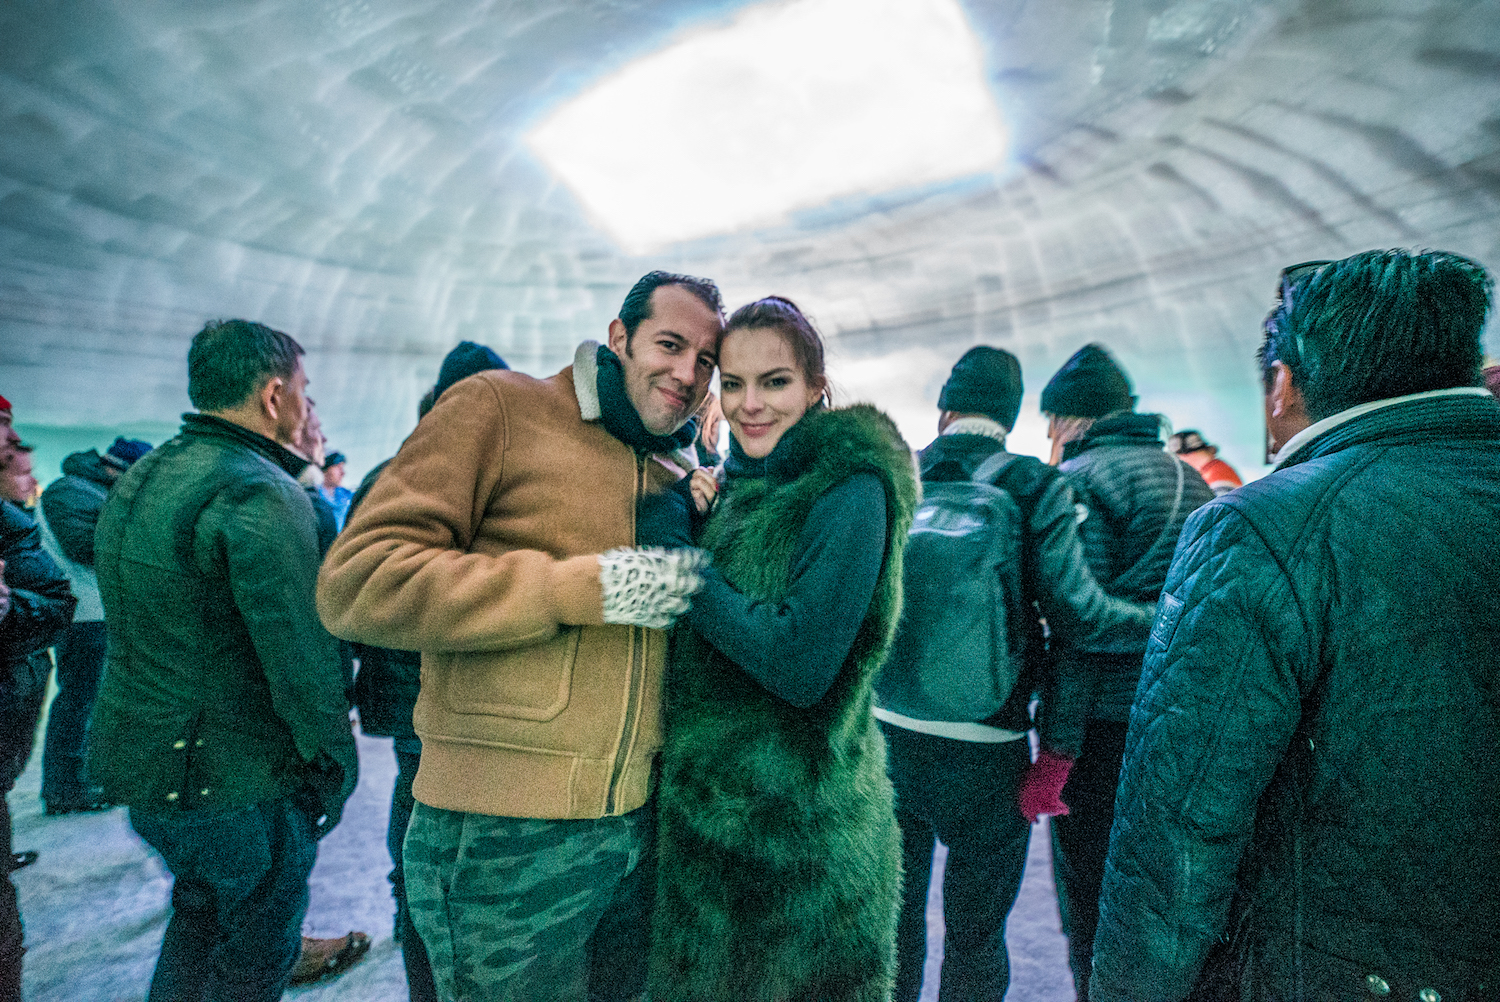 Into the Glacier: Bei diesem Side-Event tanzten Besucher im Eis zu DJ-Tunes